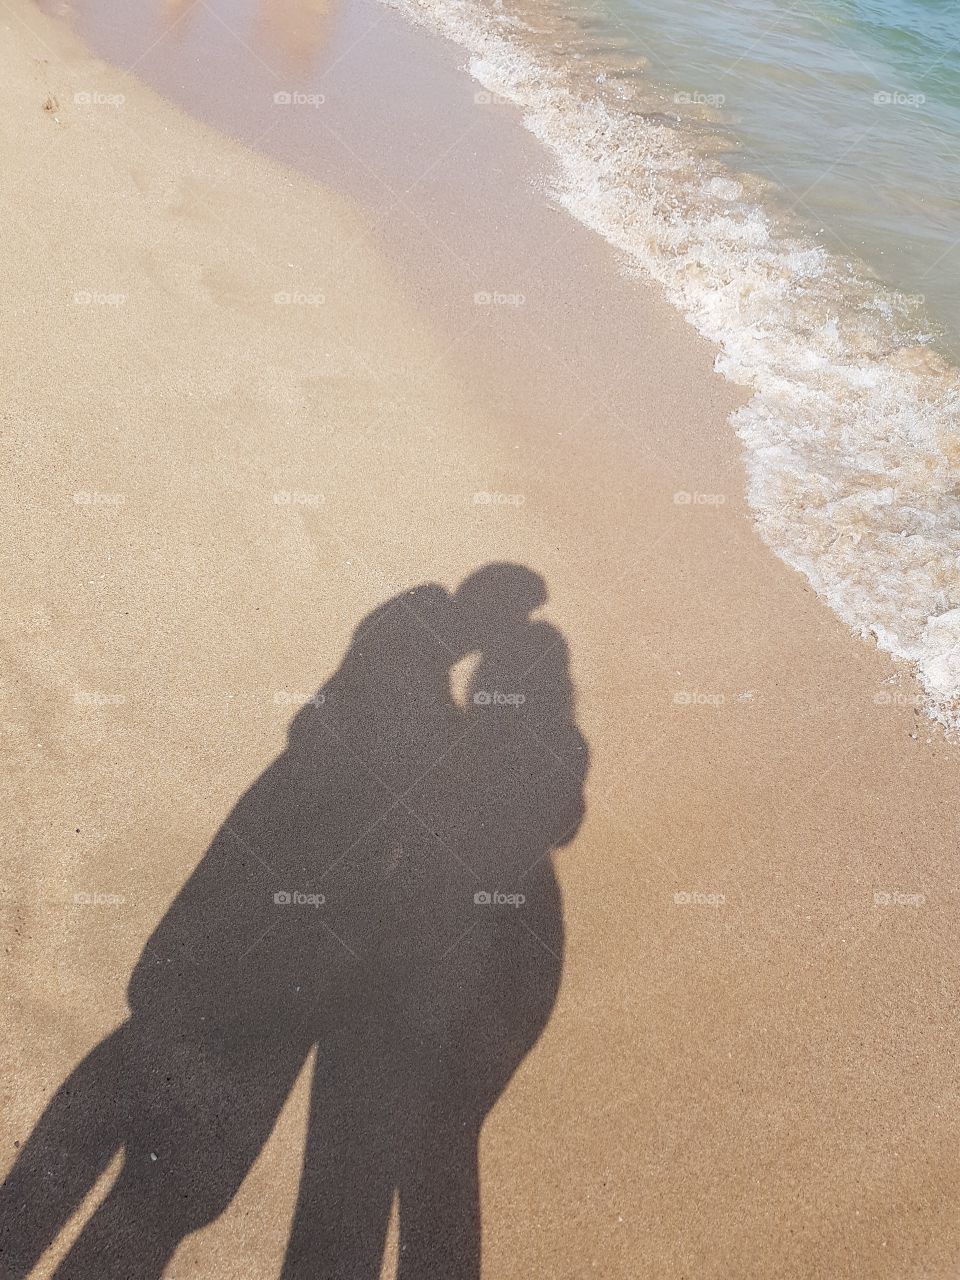 lovers on the beach shadows